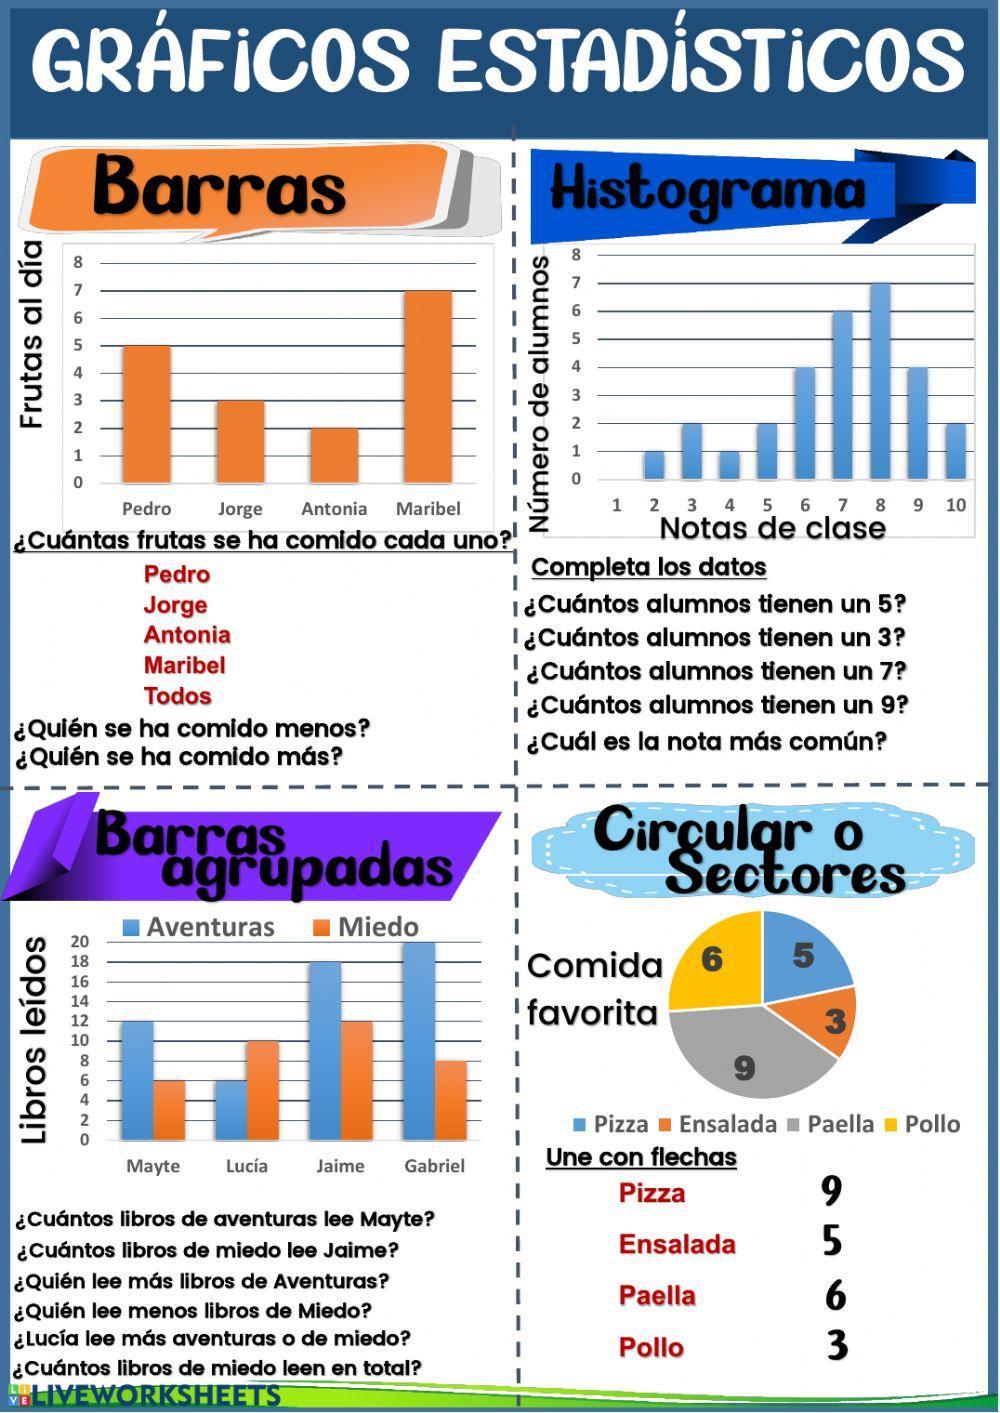 Gráficos de barras y circulares - Estadística